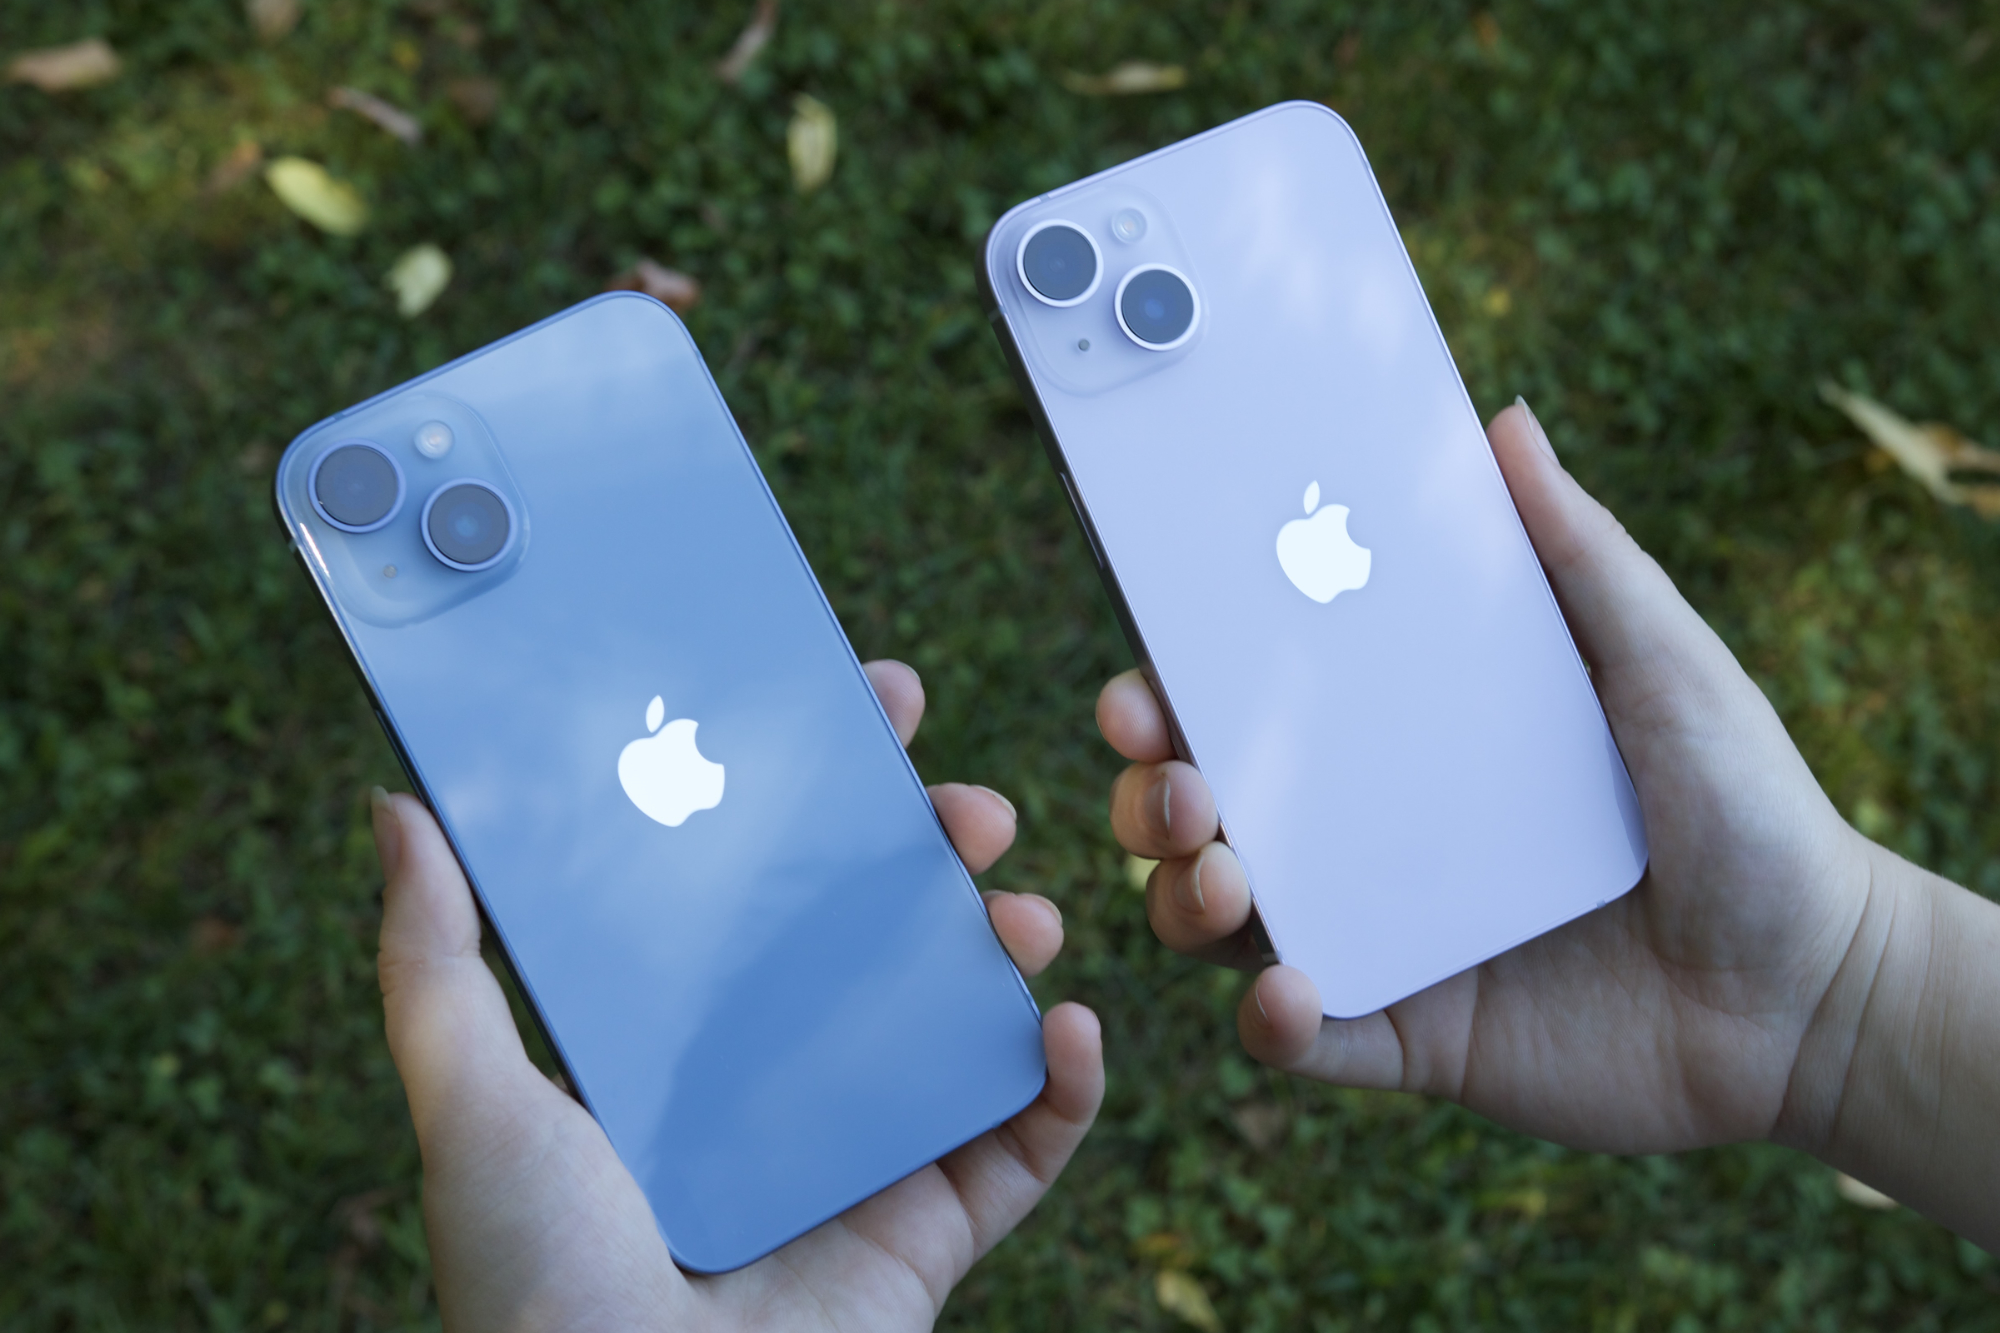 Alguém segurando um iPhone 14 azul em uma mão e um iPhone 14 roxo na outra.